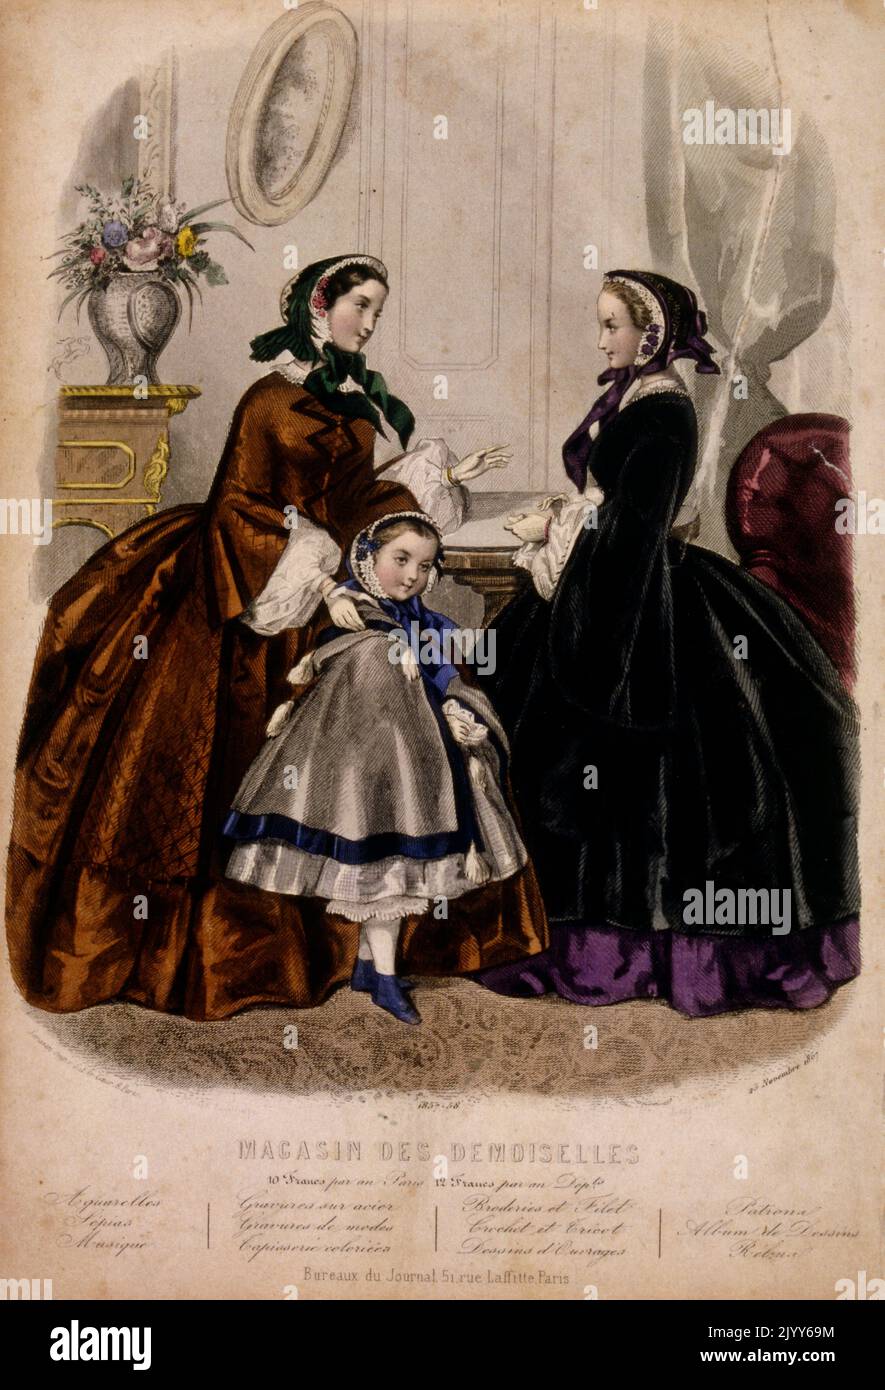 Bild aus der Publikation Bureaus du Journal, 51 Rue Laffite, Paris; zeigt eine Mutter mit ihrem kleinen Kind beim Einkauf von Kleidung in einer Modeabteilung. Stockfoto